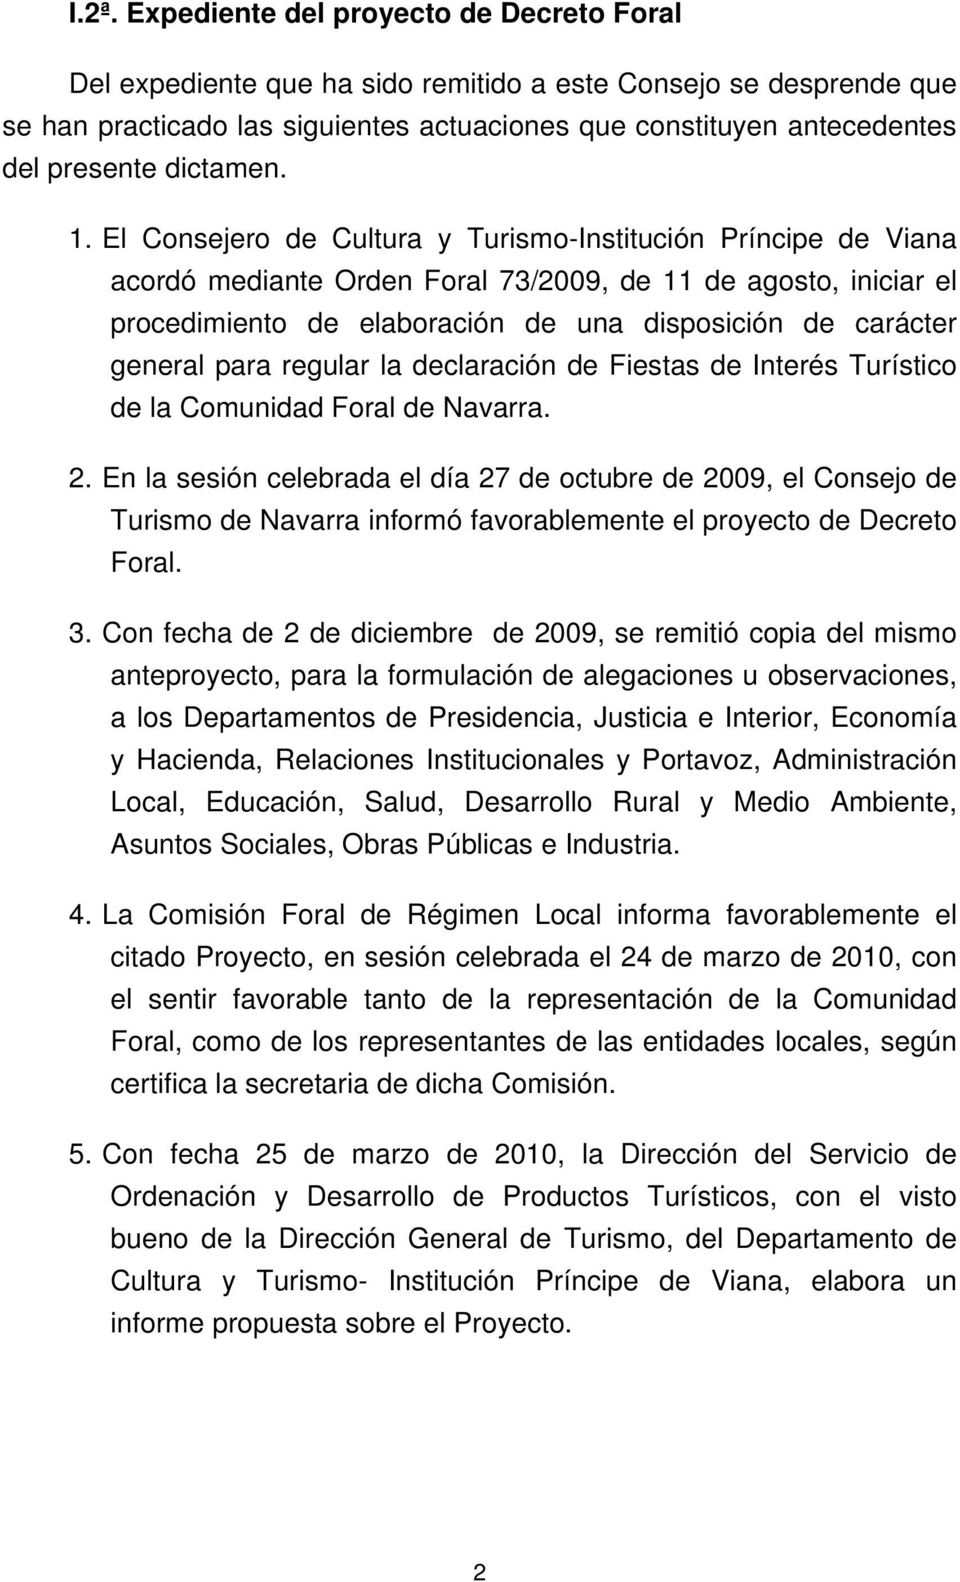 El Consejero de Cultura y Turismo-Institución Príncipe de Viana acordó mediante Orden Foral 73/2009, de 11 de agosto, iniciar el procedimiento de elaboración de una disposición de carácter general